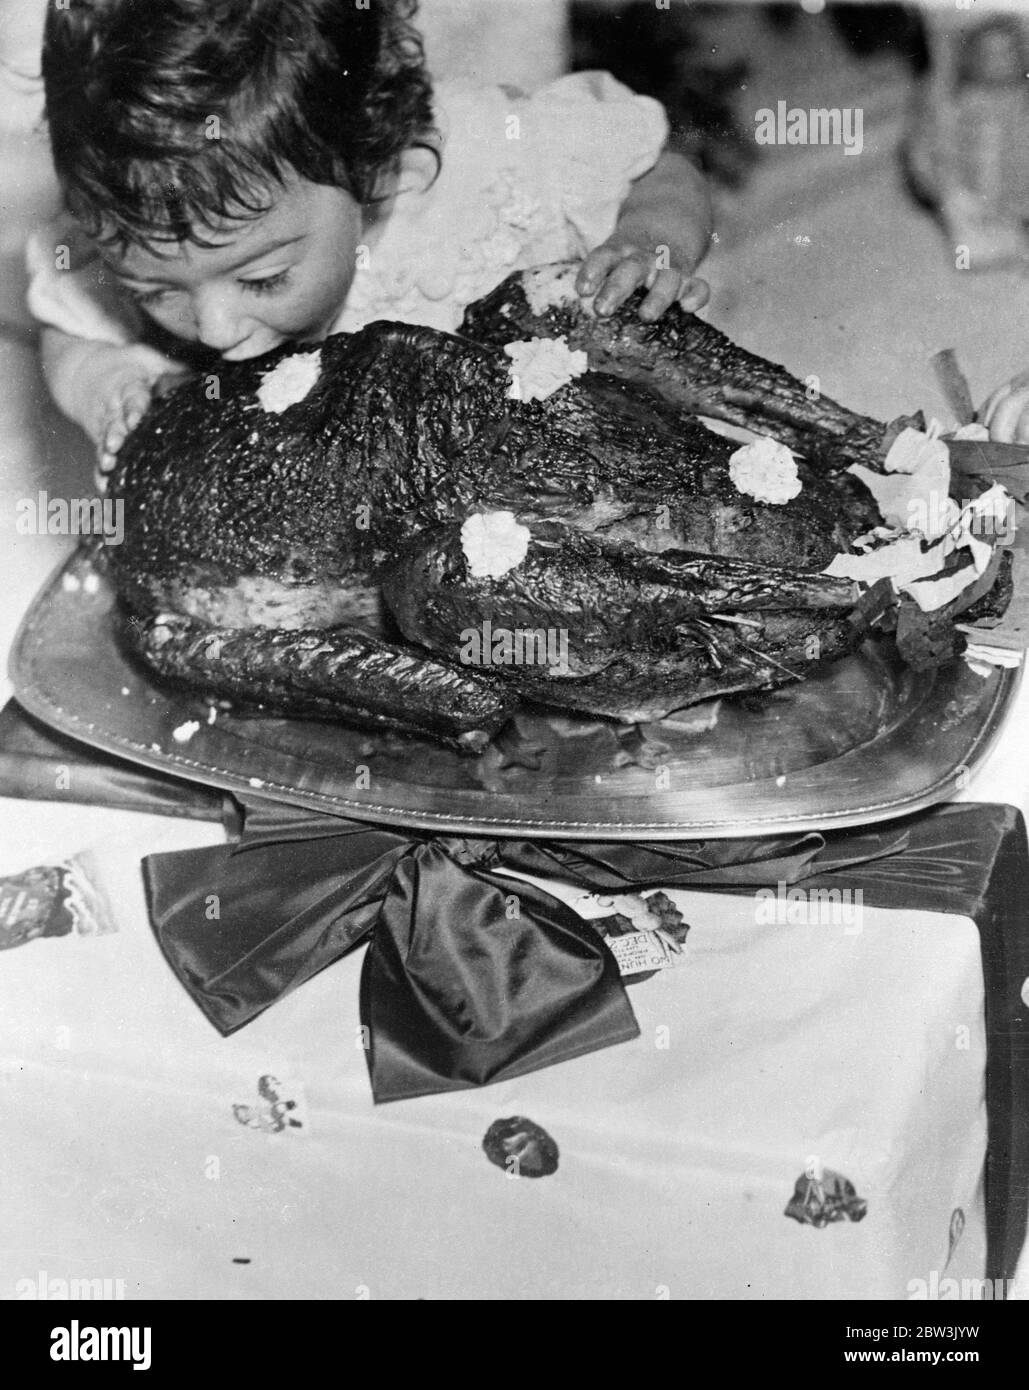 Exklusive Bilder der Dionne Quintuplets Weihnachtsfeier. Emelie geht allein gegen die türkei vor. 26 Dezember 1935 Stockfoto